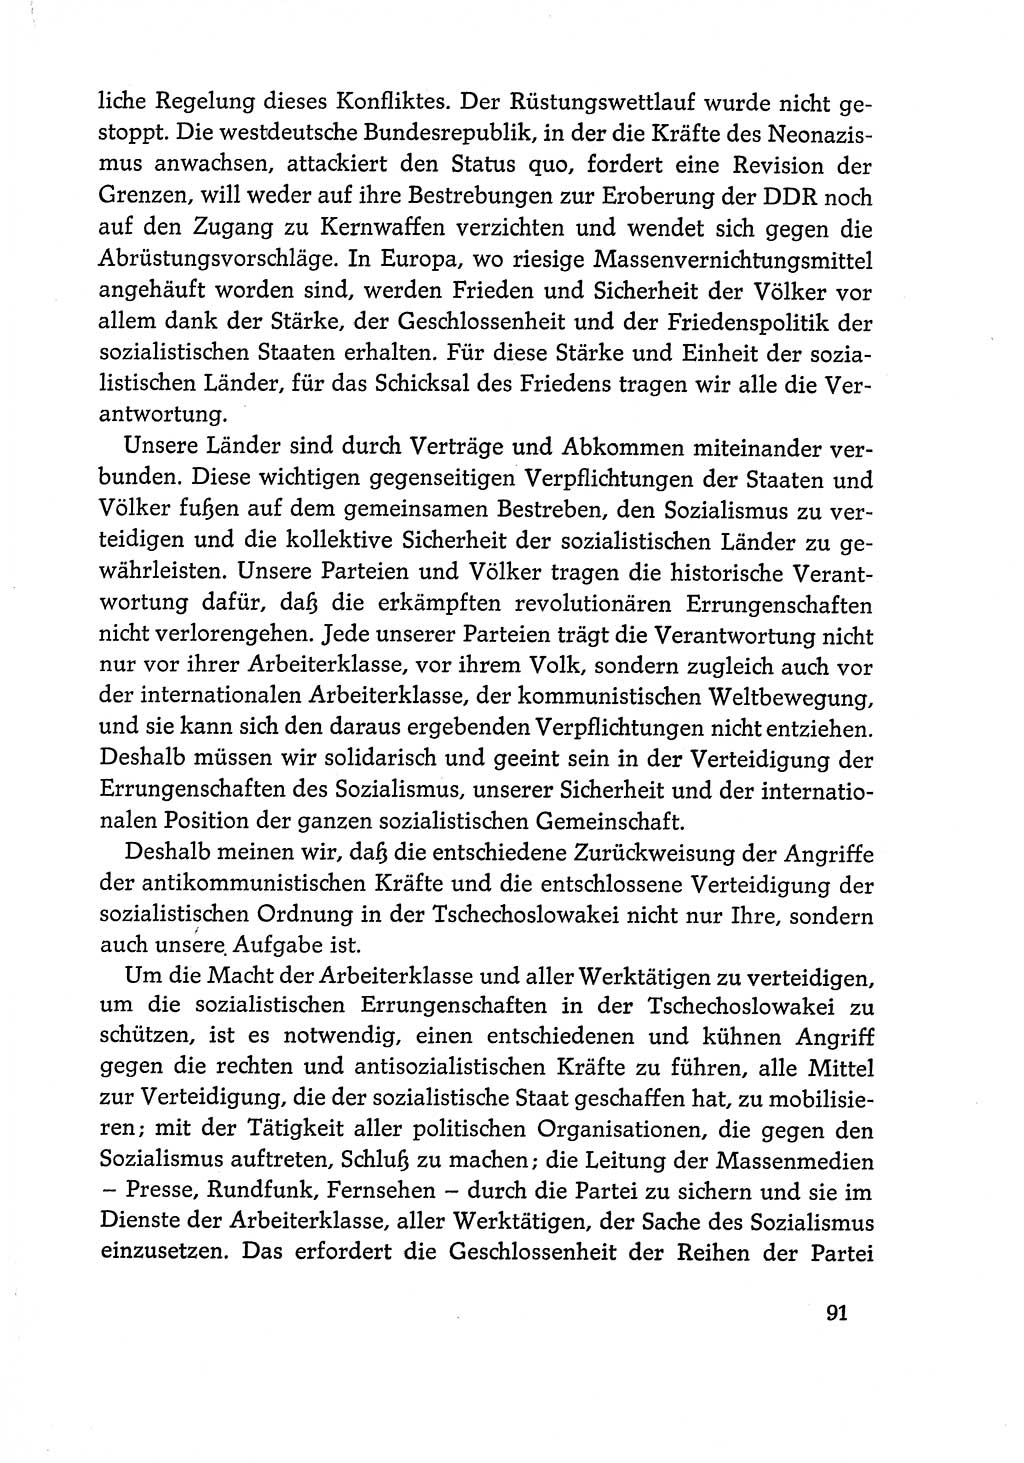 Dokumente der Sozialistischen Einheitspartei Deutschlands (SED) [Deutsche Demokratische Republik (DDR)] 1968-1969, Seite 91 (Dok. SED DDR 1968-1969, S. 91)